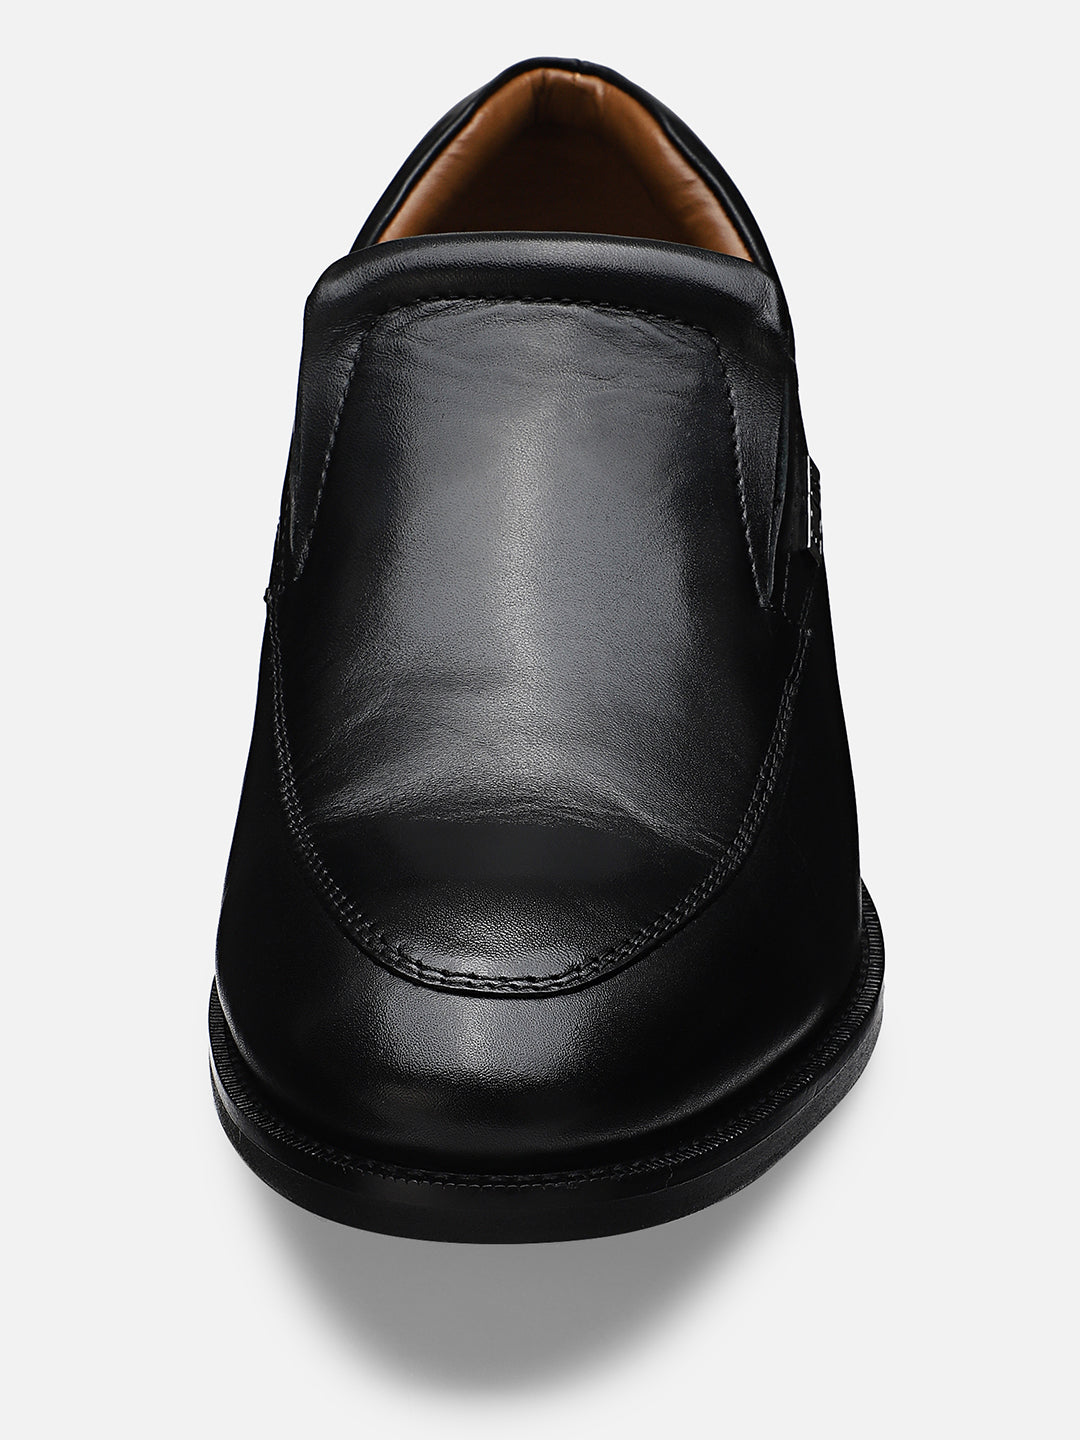 Ezok Men Black Leather Formal Shoes